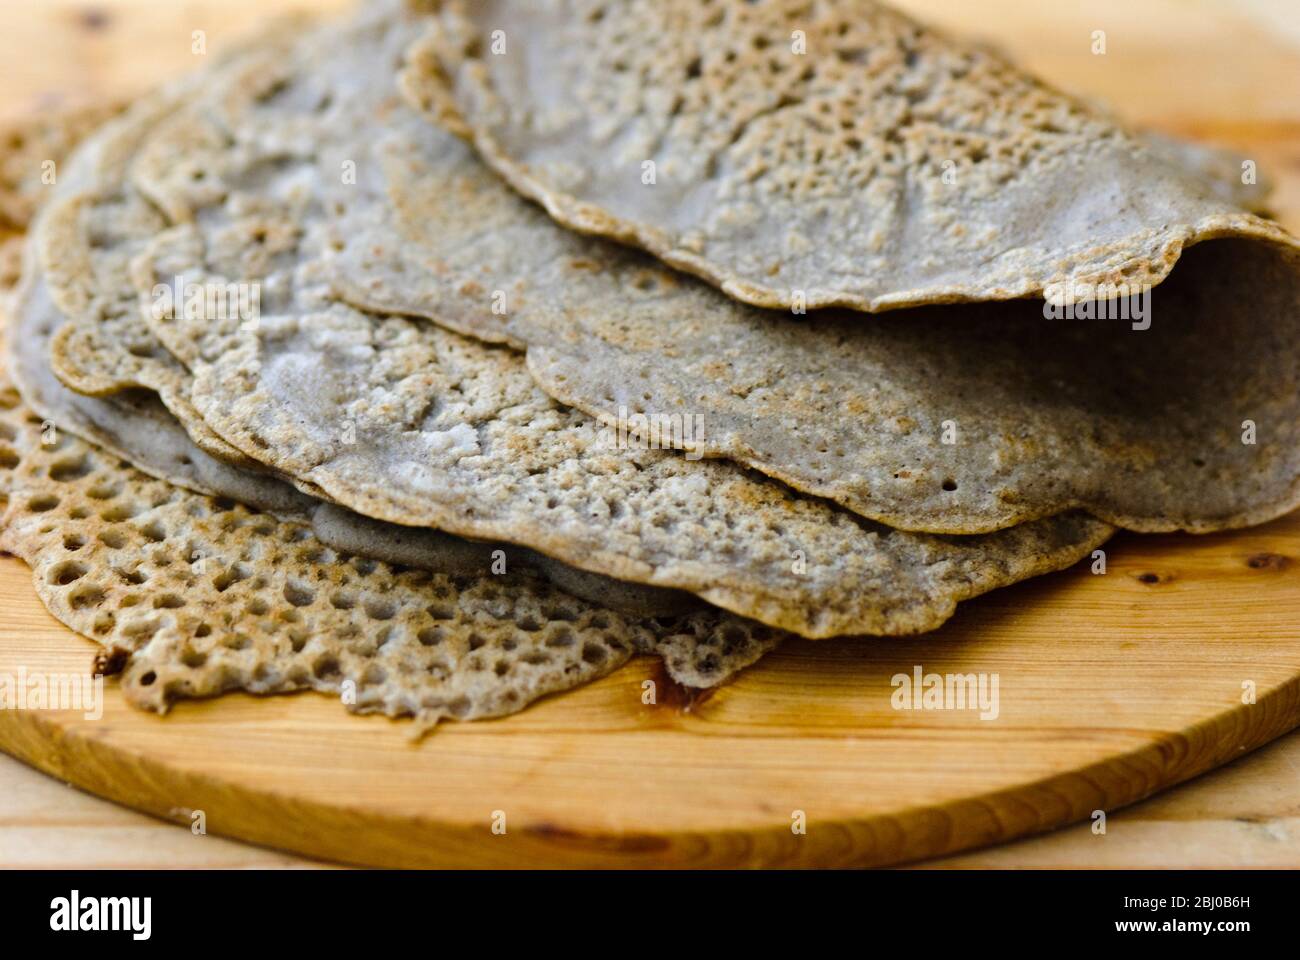 Impacchi di pane fatti di farina di grano saraceno, sale, olio d'oliva e acqua. Senza glutine. - Foto Stock